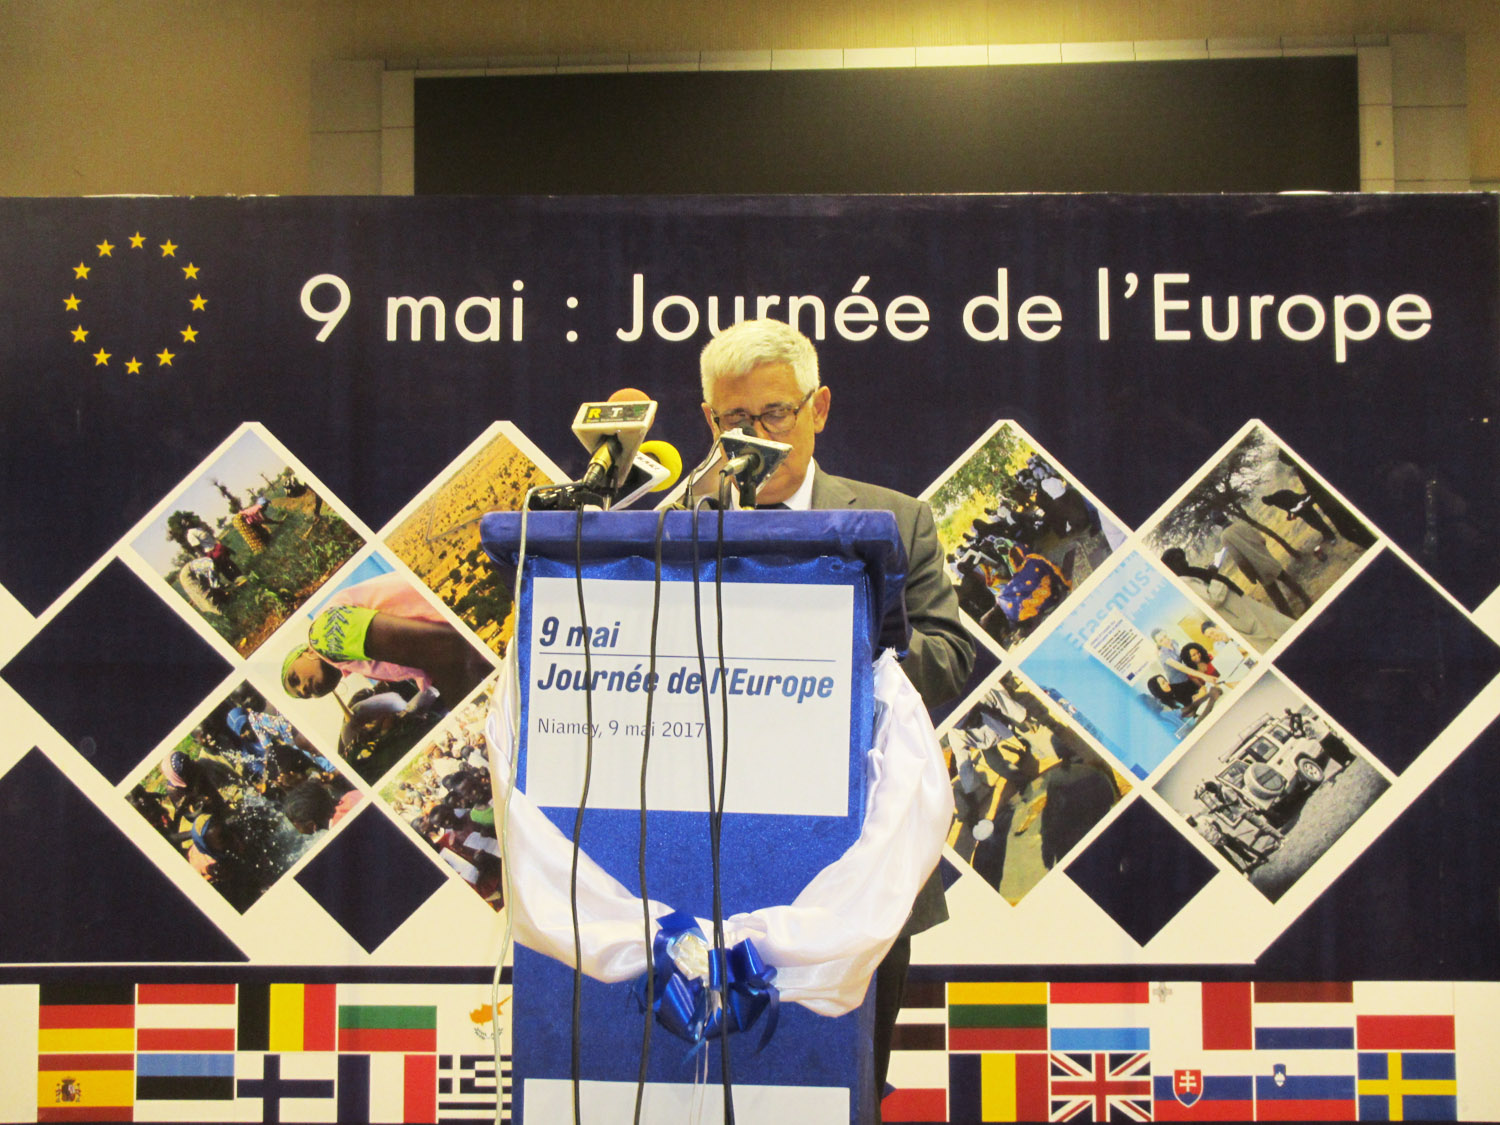 Magazine du 09/05/2017 – Exposition le 9 et 10 mai au palais du 29 juillet de Niamey des projets et programmes appuyés par l’Union européenne